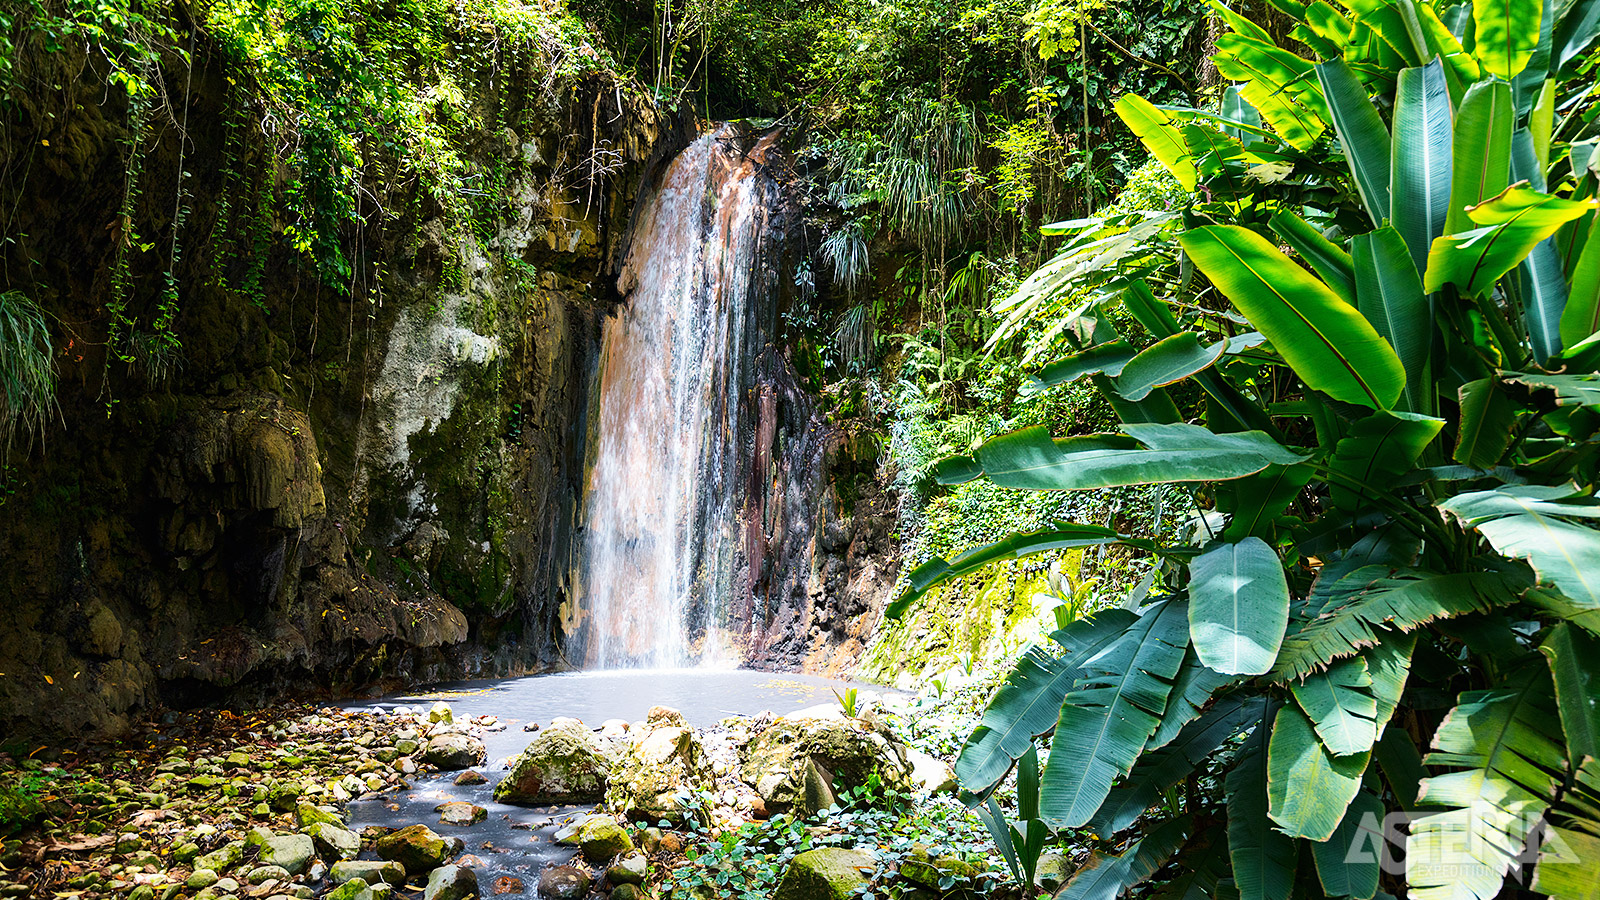 Het water en de rotsen van Diamond Falls op St. Lucia veranderen continu van kleur, afhankelijk van het mineraalgehalte